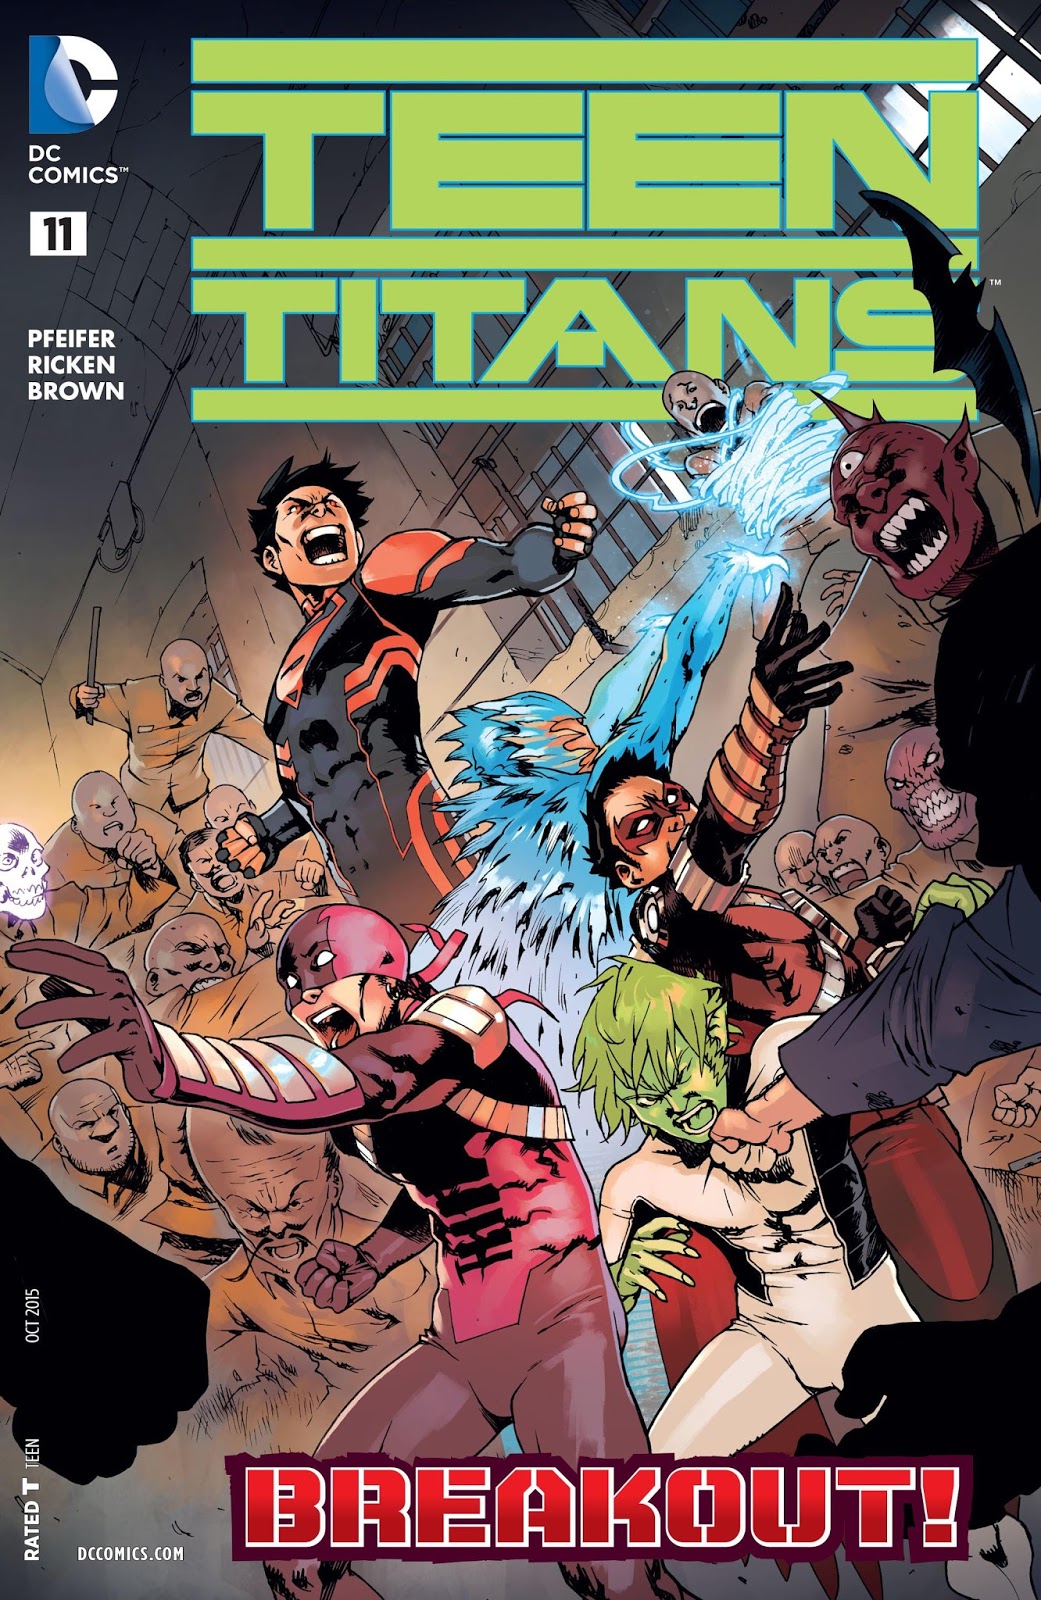 TEEN TITANS ANNUAL #1 DC COMICS NEW 52 JUNE 2015 